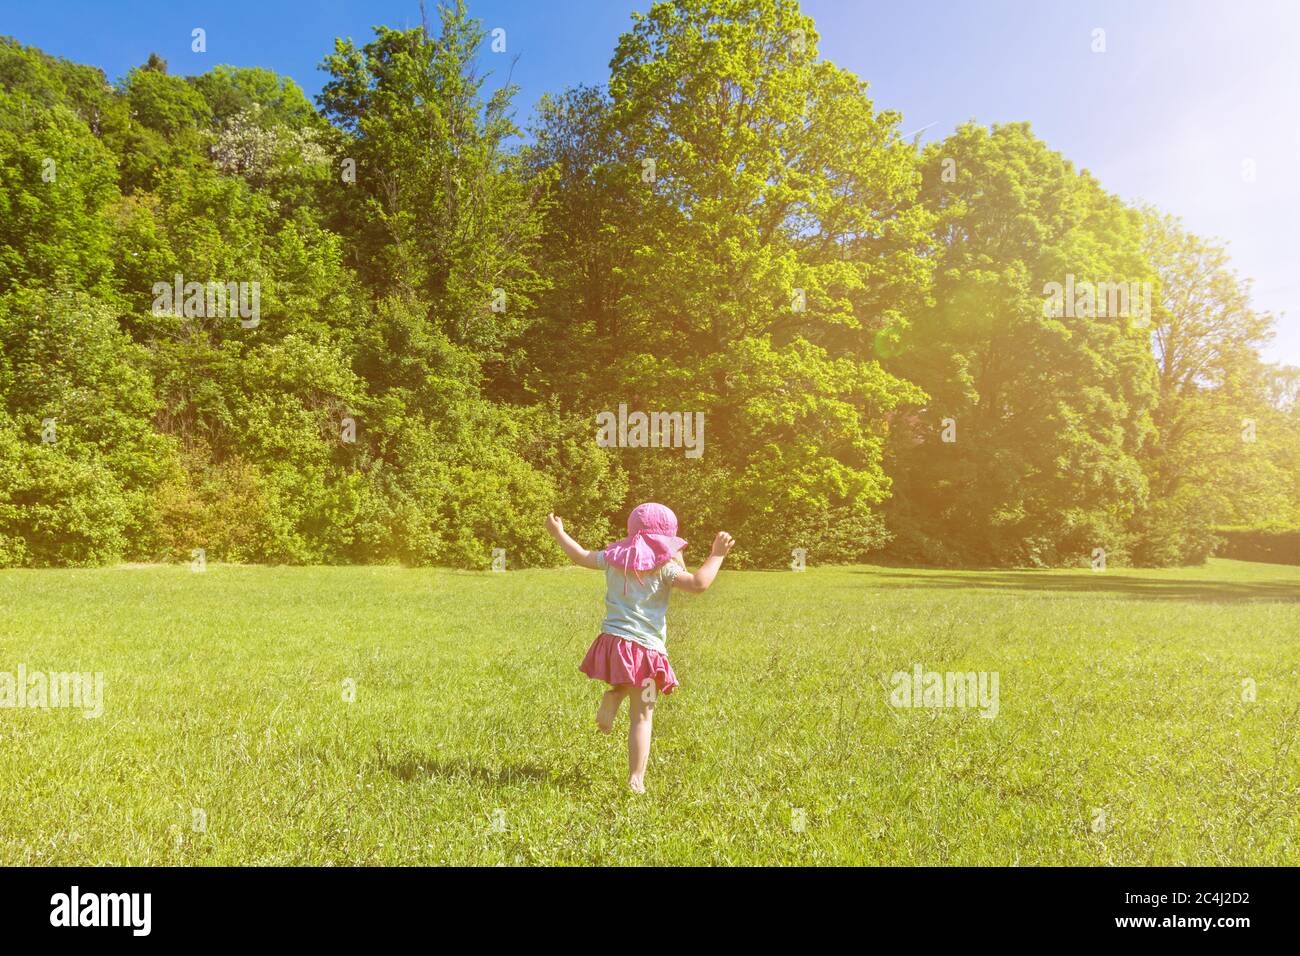 Junge glückliche Kind Spaß und Tanz auf einer grünen Wiese im Frühjahr an einem sonnigen Tag Stockfoto